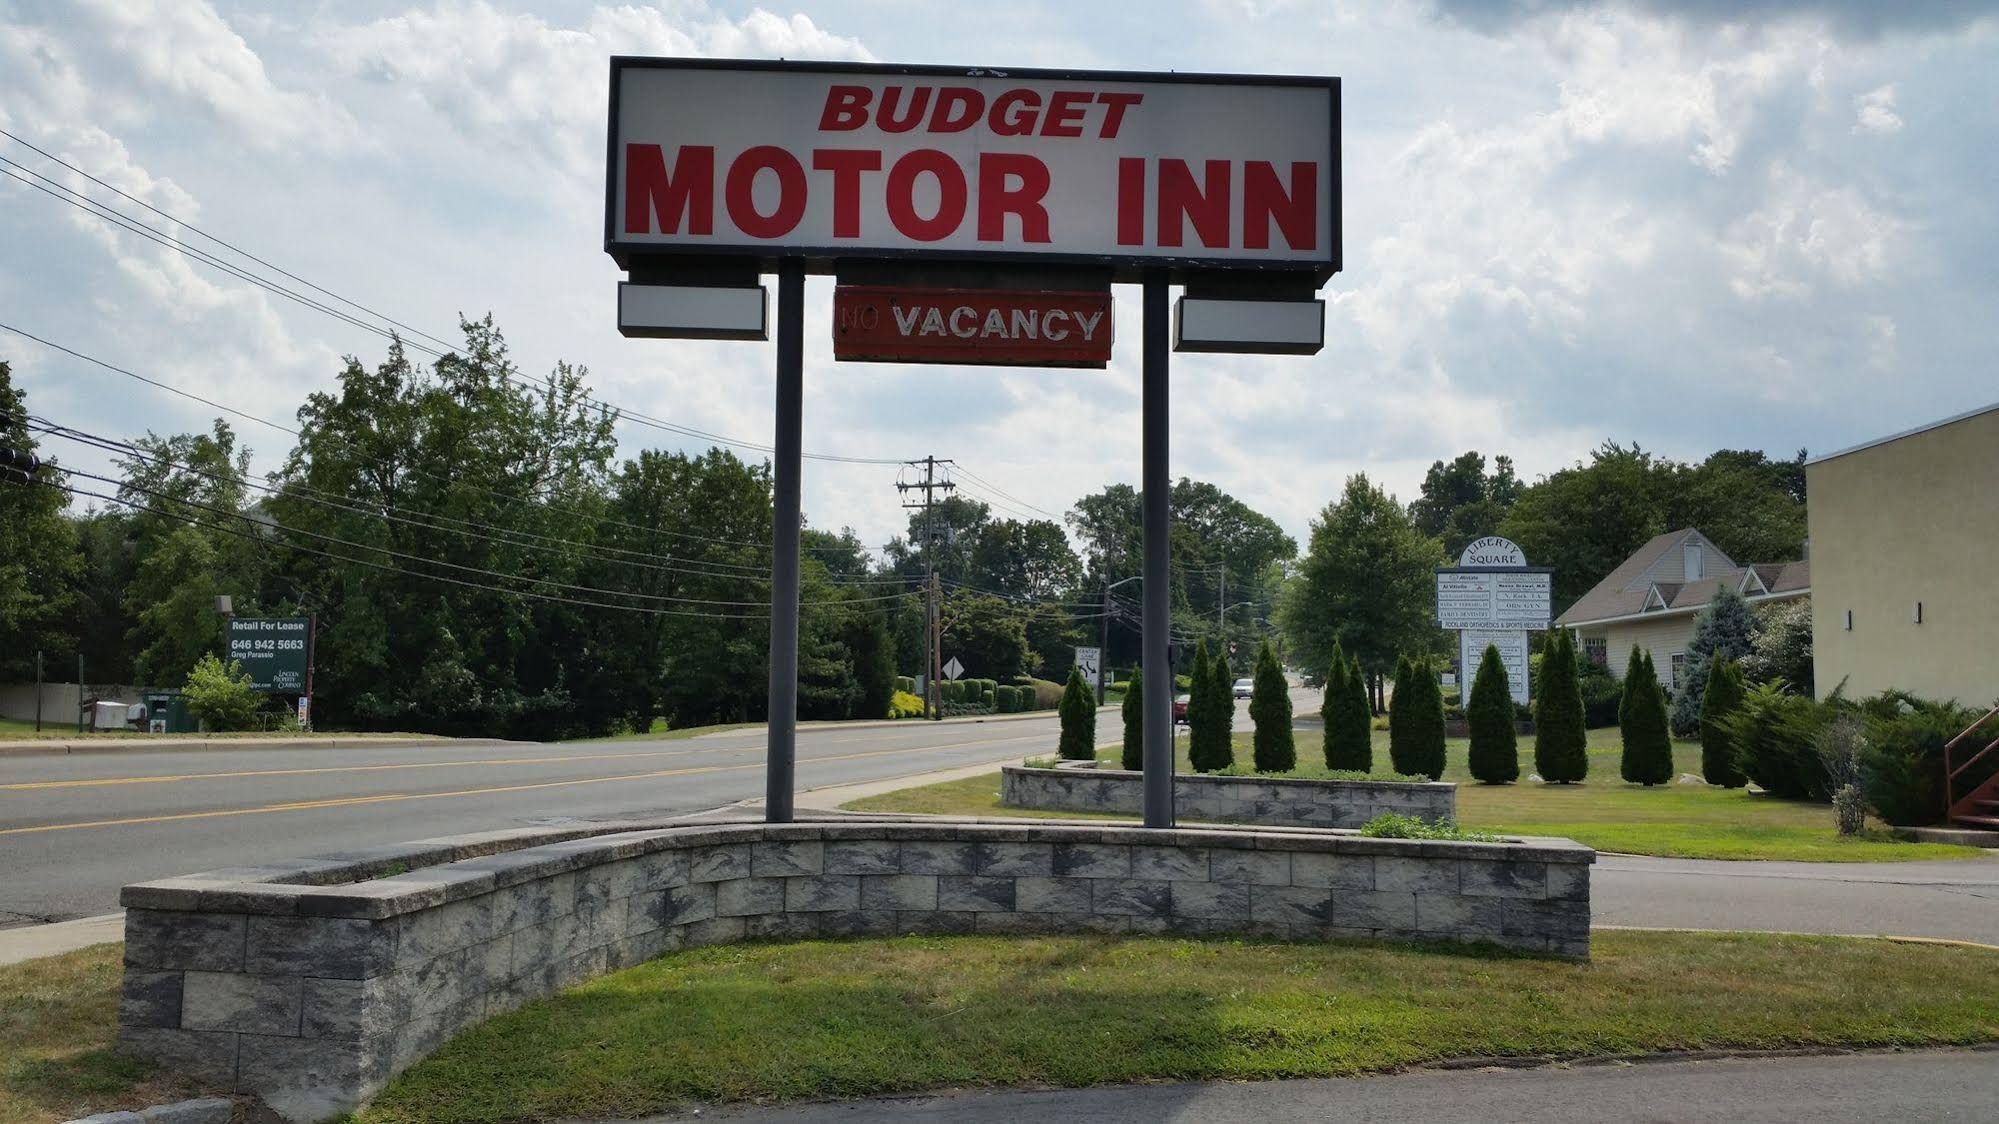 Budget Motor Inn